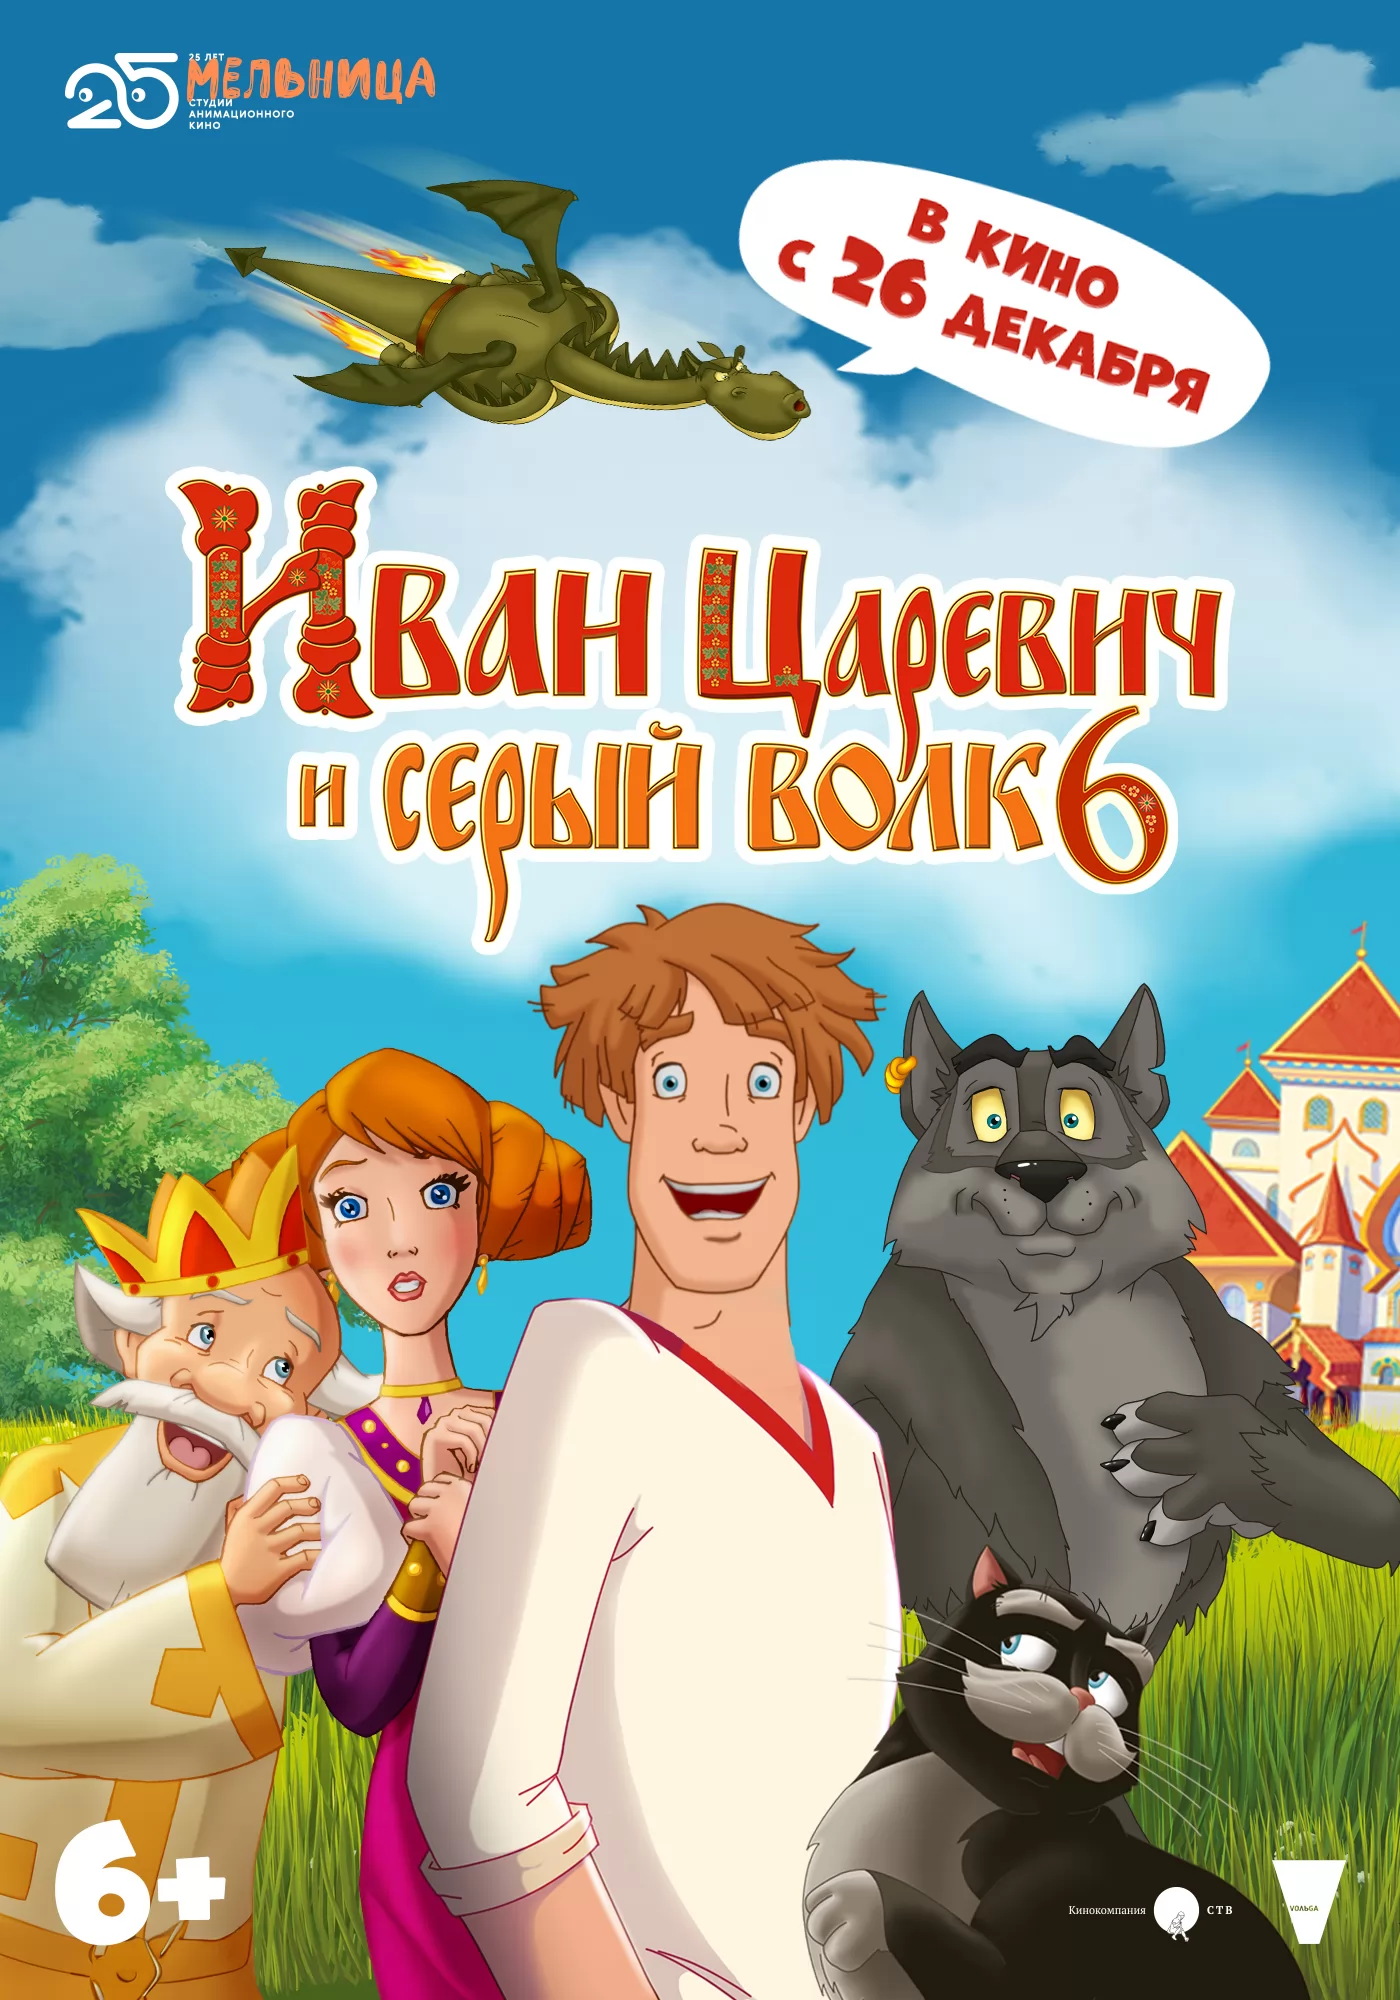 Иван Царевич и Серый Волк 6: постер N234391